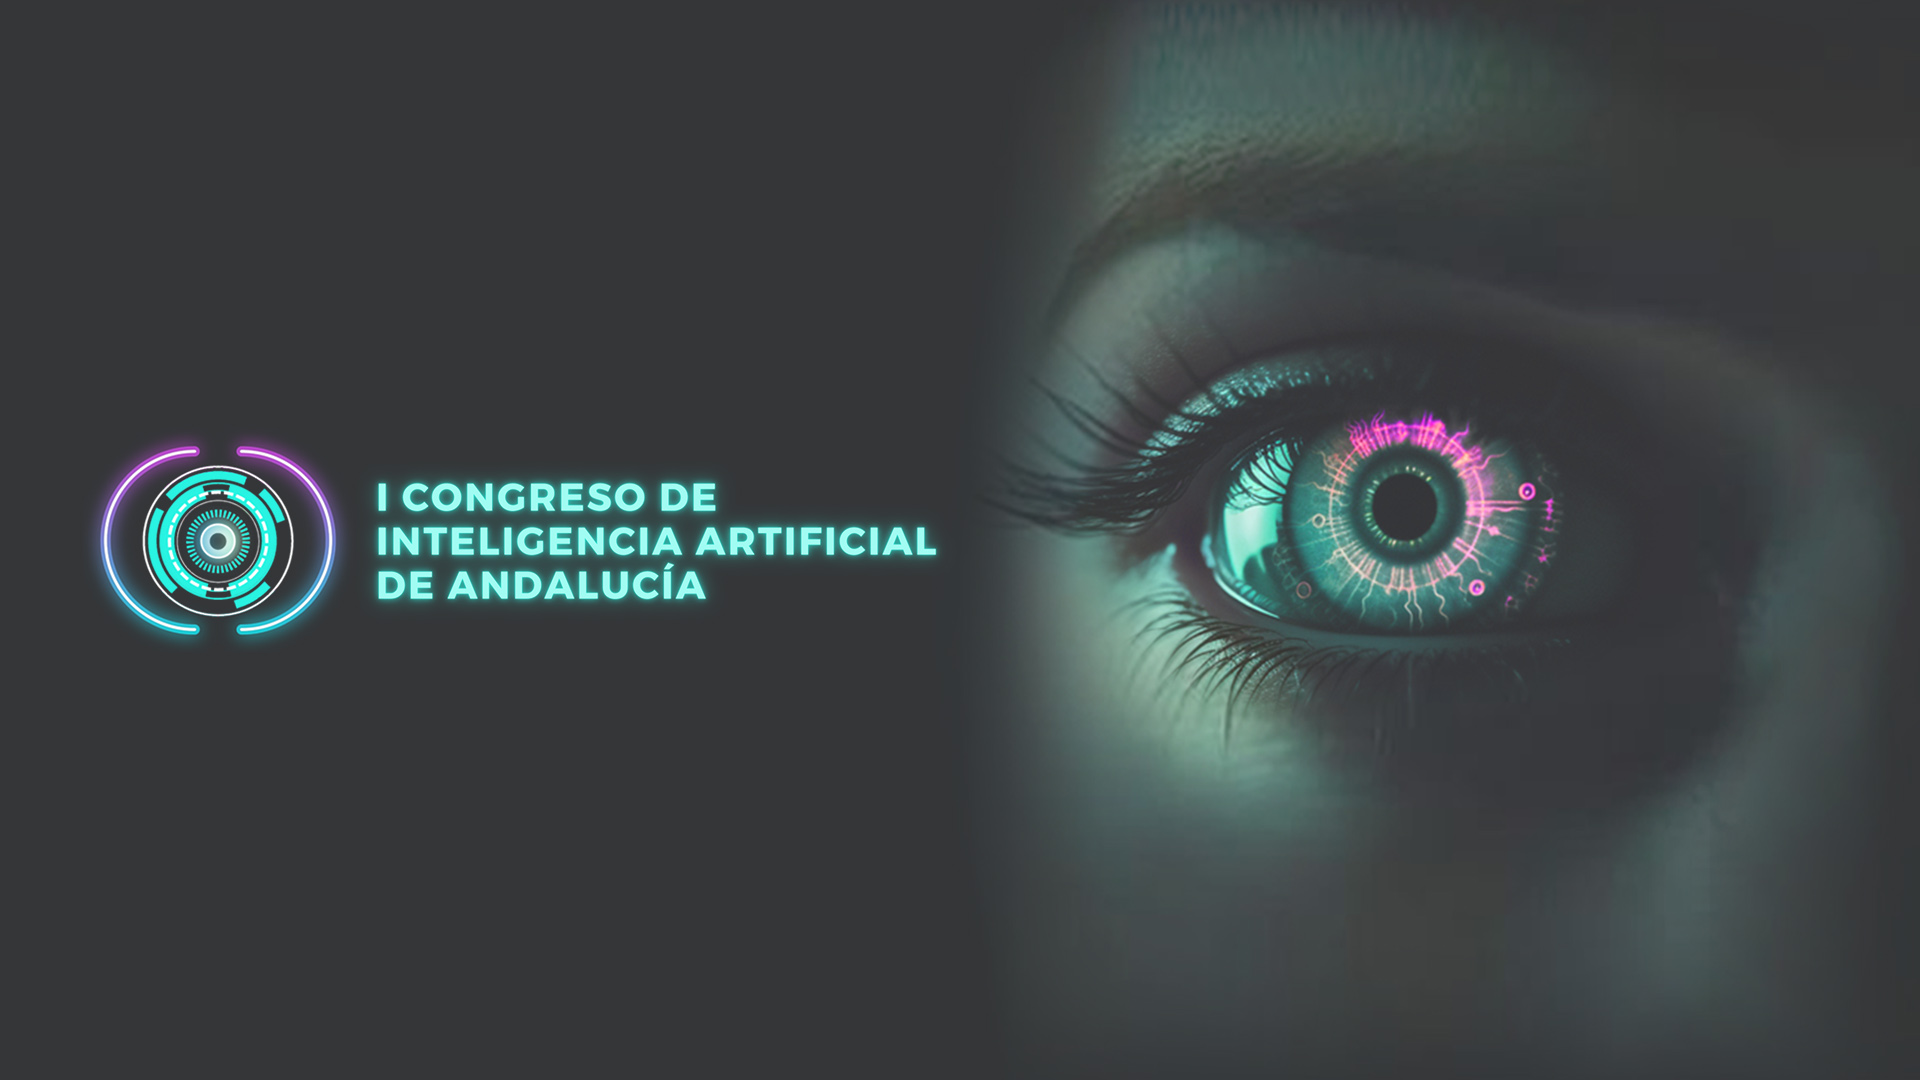 El I Congreso de Inteligencia Artificial de Andalucía se celebrará en Granada